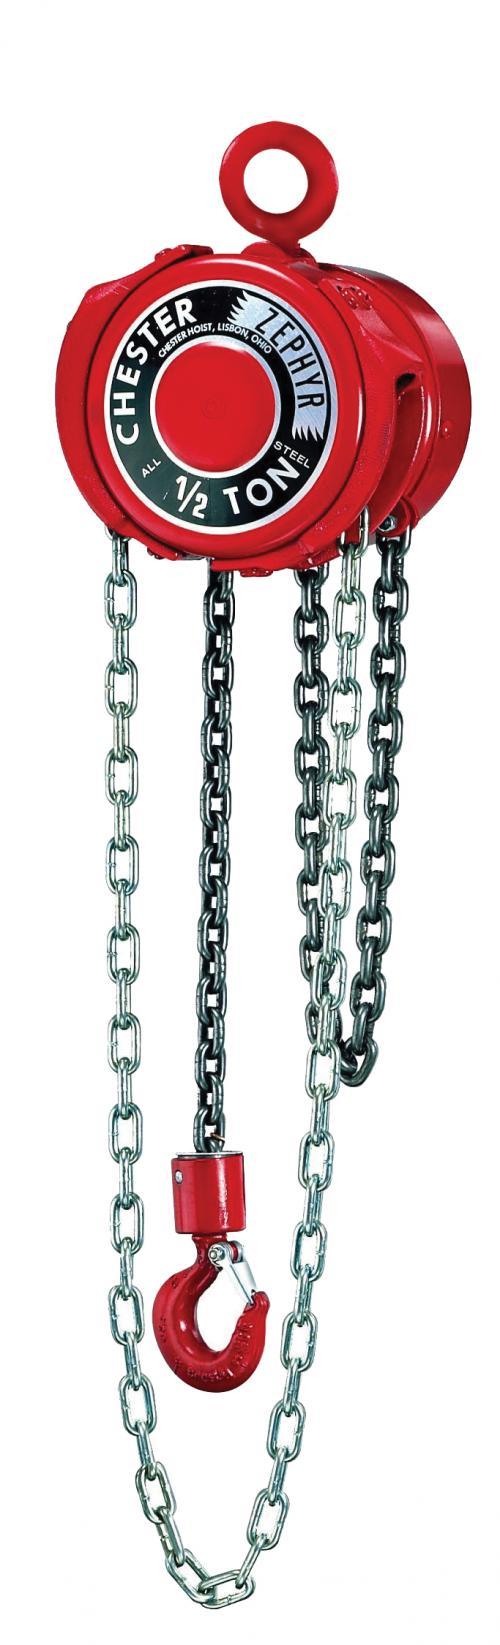 16 Ton Chester Zephyr | Manual Chain Hoist | Uescocranes.com